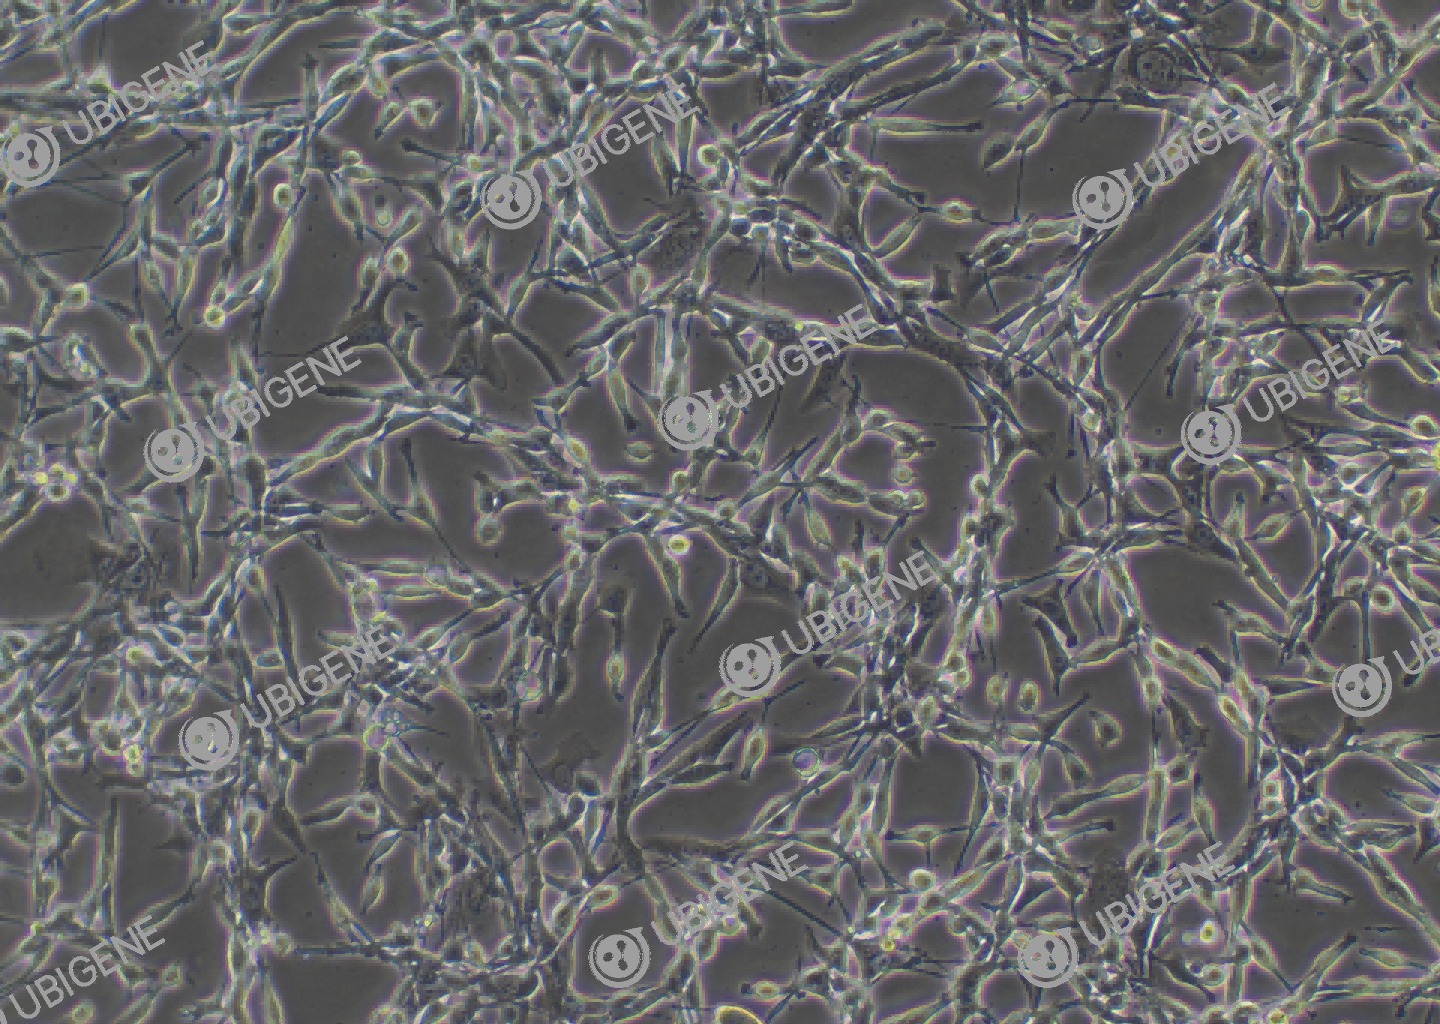 小鼠结肠癌细胞(CT26.WT)细胞形态培养图